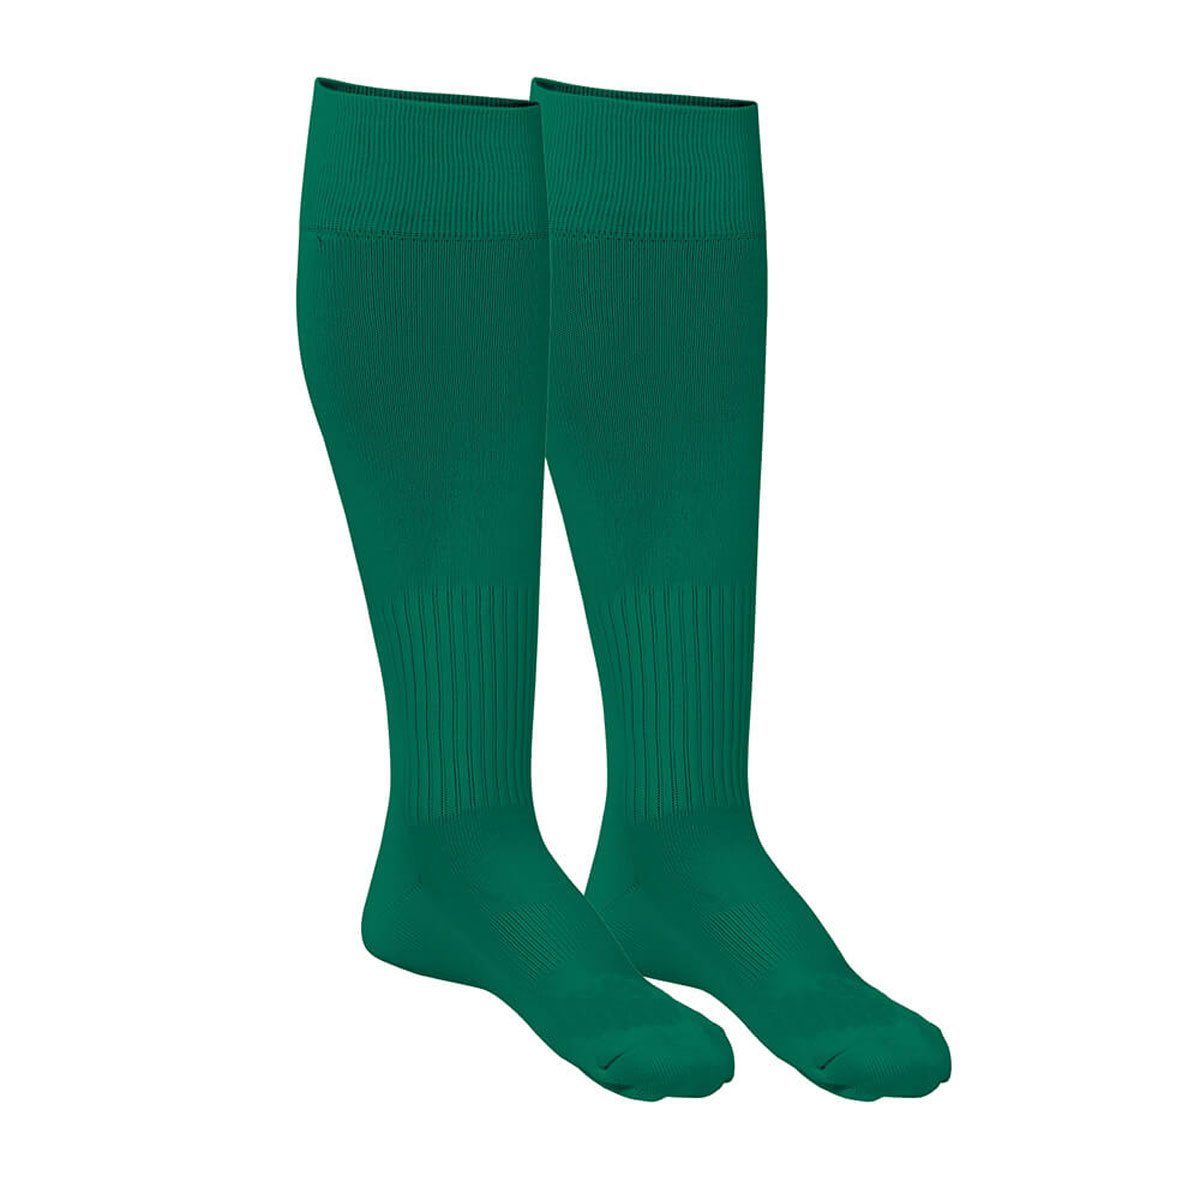 Strumpfstutzen mit Stutzenstrümpfe CALIMA Geco Passform Stutzenstrümpfe grün Sportswear Fußball strapazierfähig perfekter